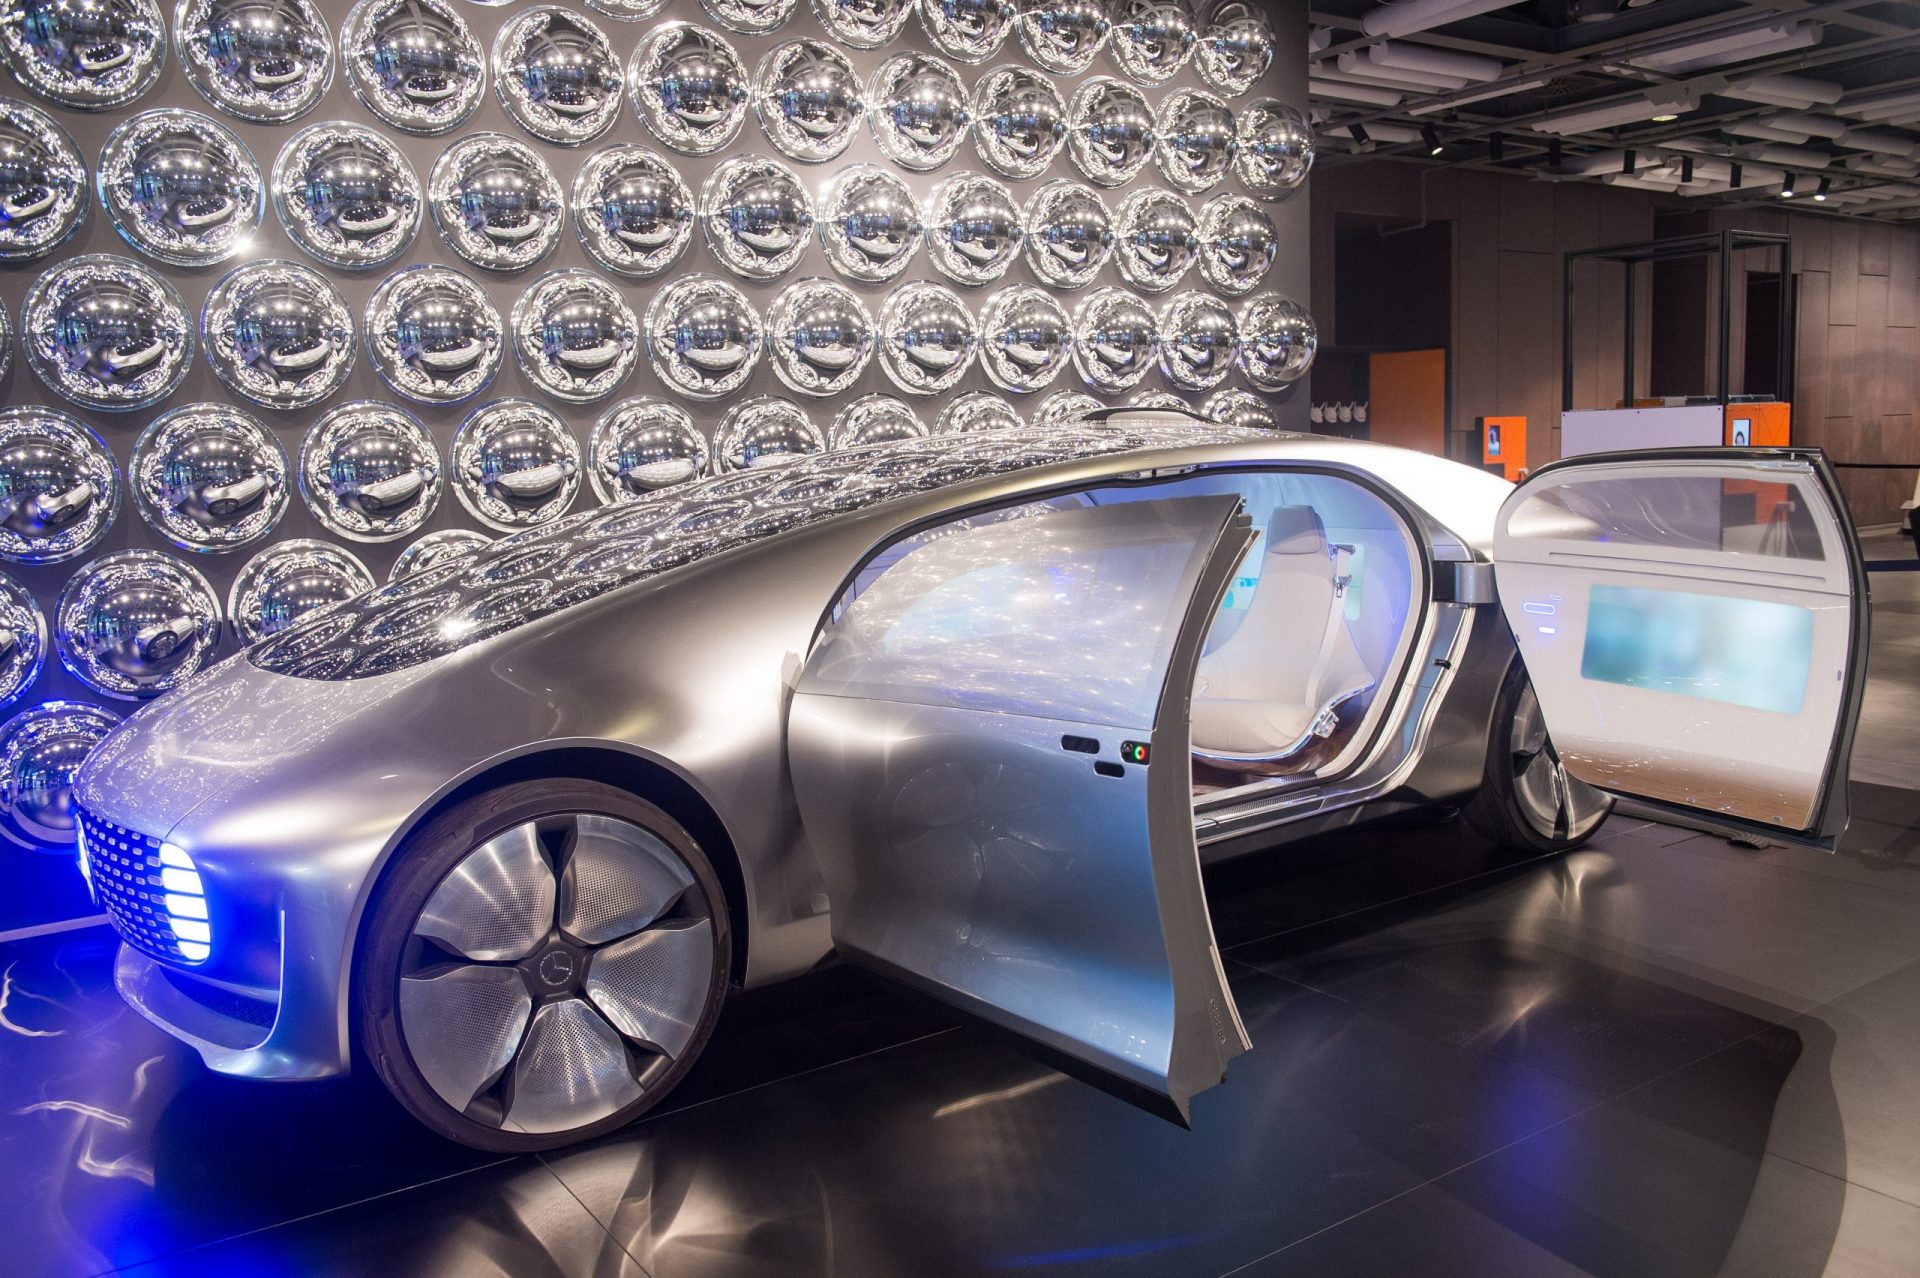 Samochód Przyszłości Do Zobaczenia W Warszawie! Mercedes F 015 Luxury In Motion Jest Częścią Wystawy W Centrum Nauki Kopernik | Motocaina.pl